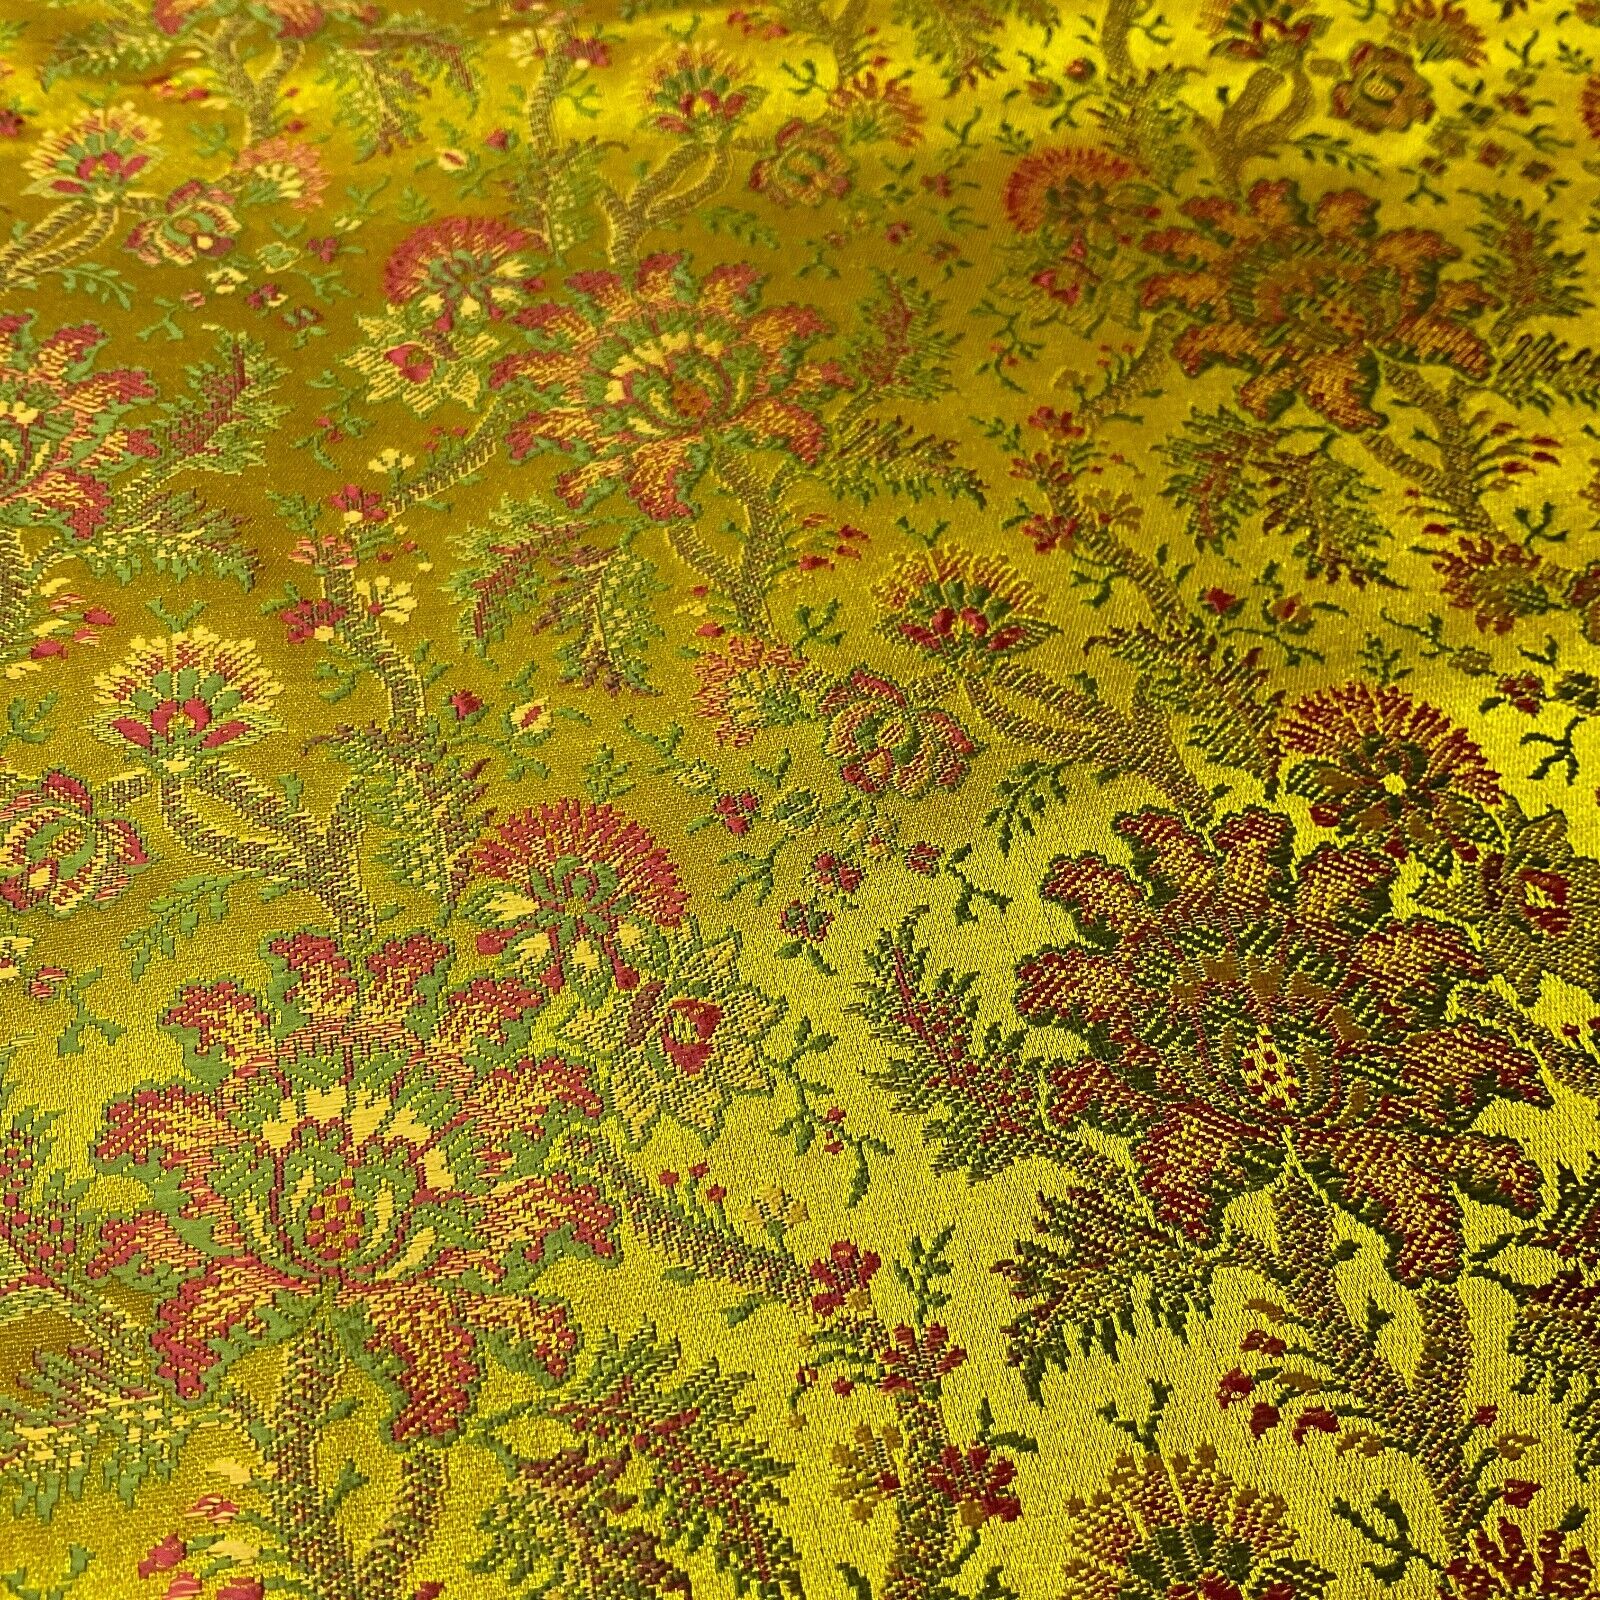 Ornamental Floral Silk Kingkhab wedding Brocade Fabric 111cm wide M1731